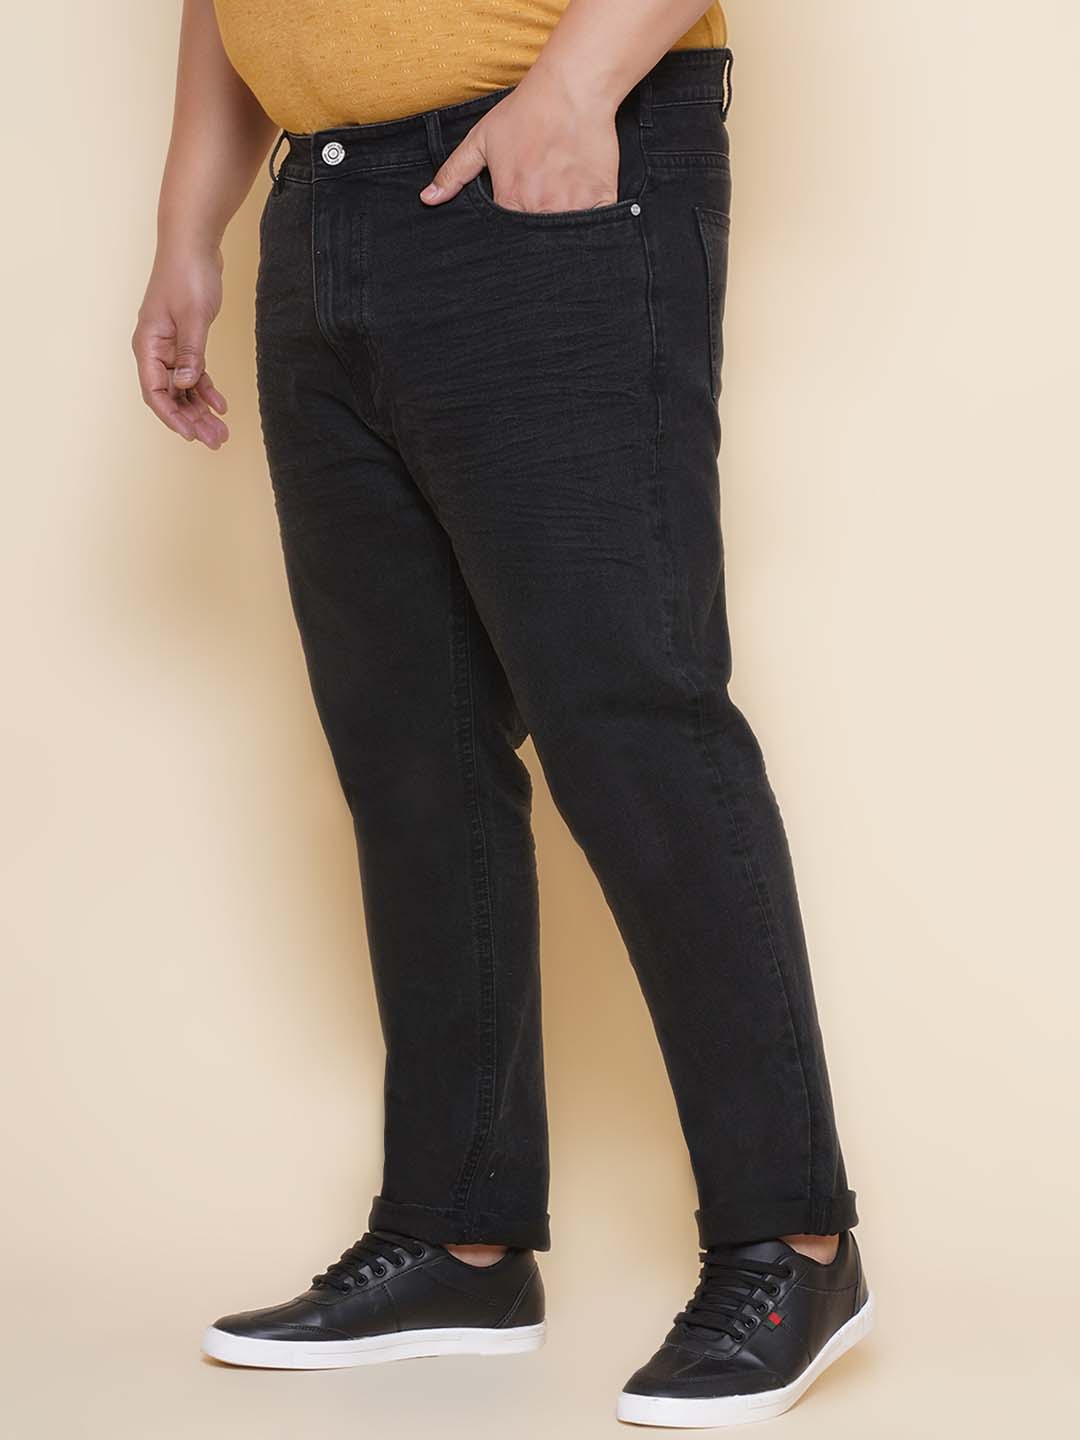 bottomwear/jeans/JPJ27104/jpj27104-4.jpg